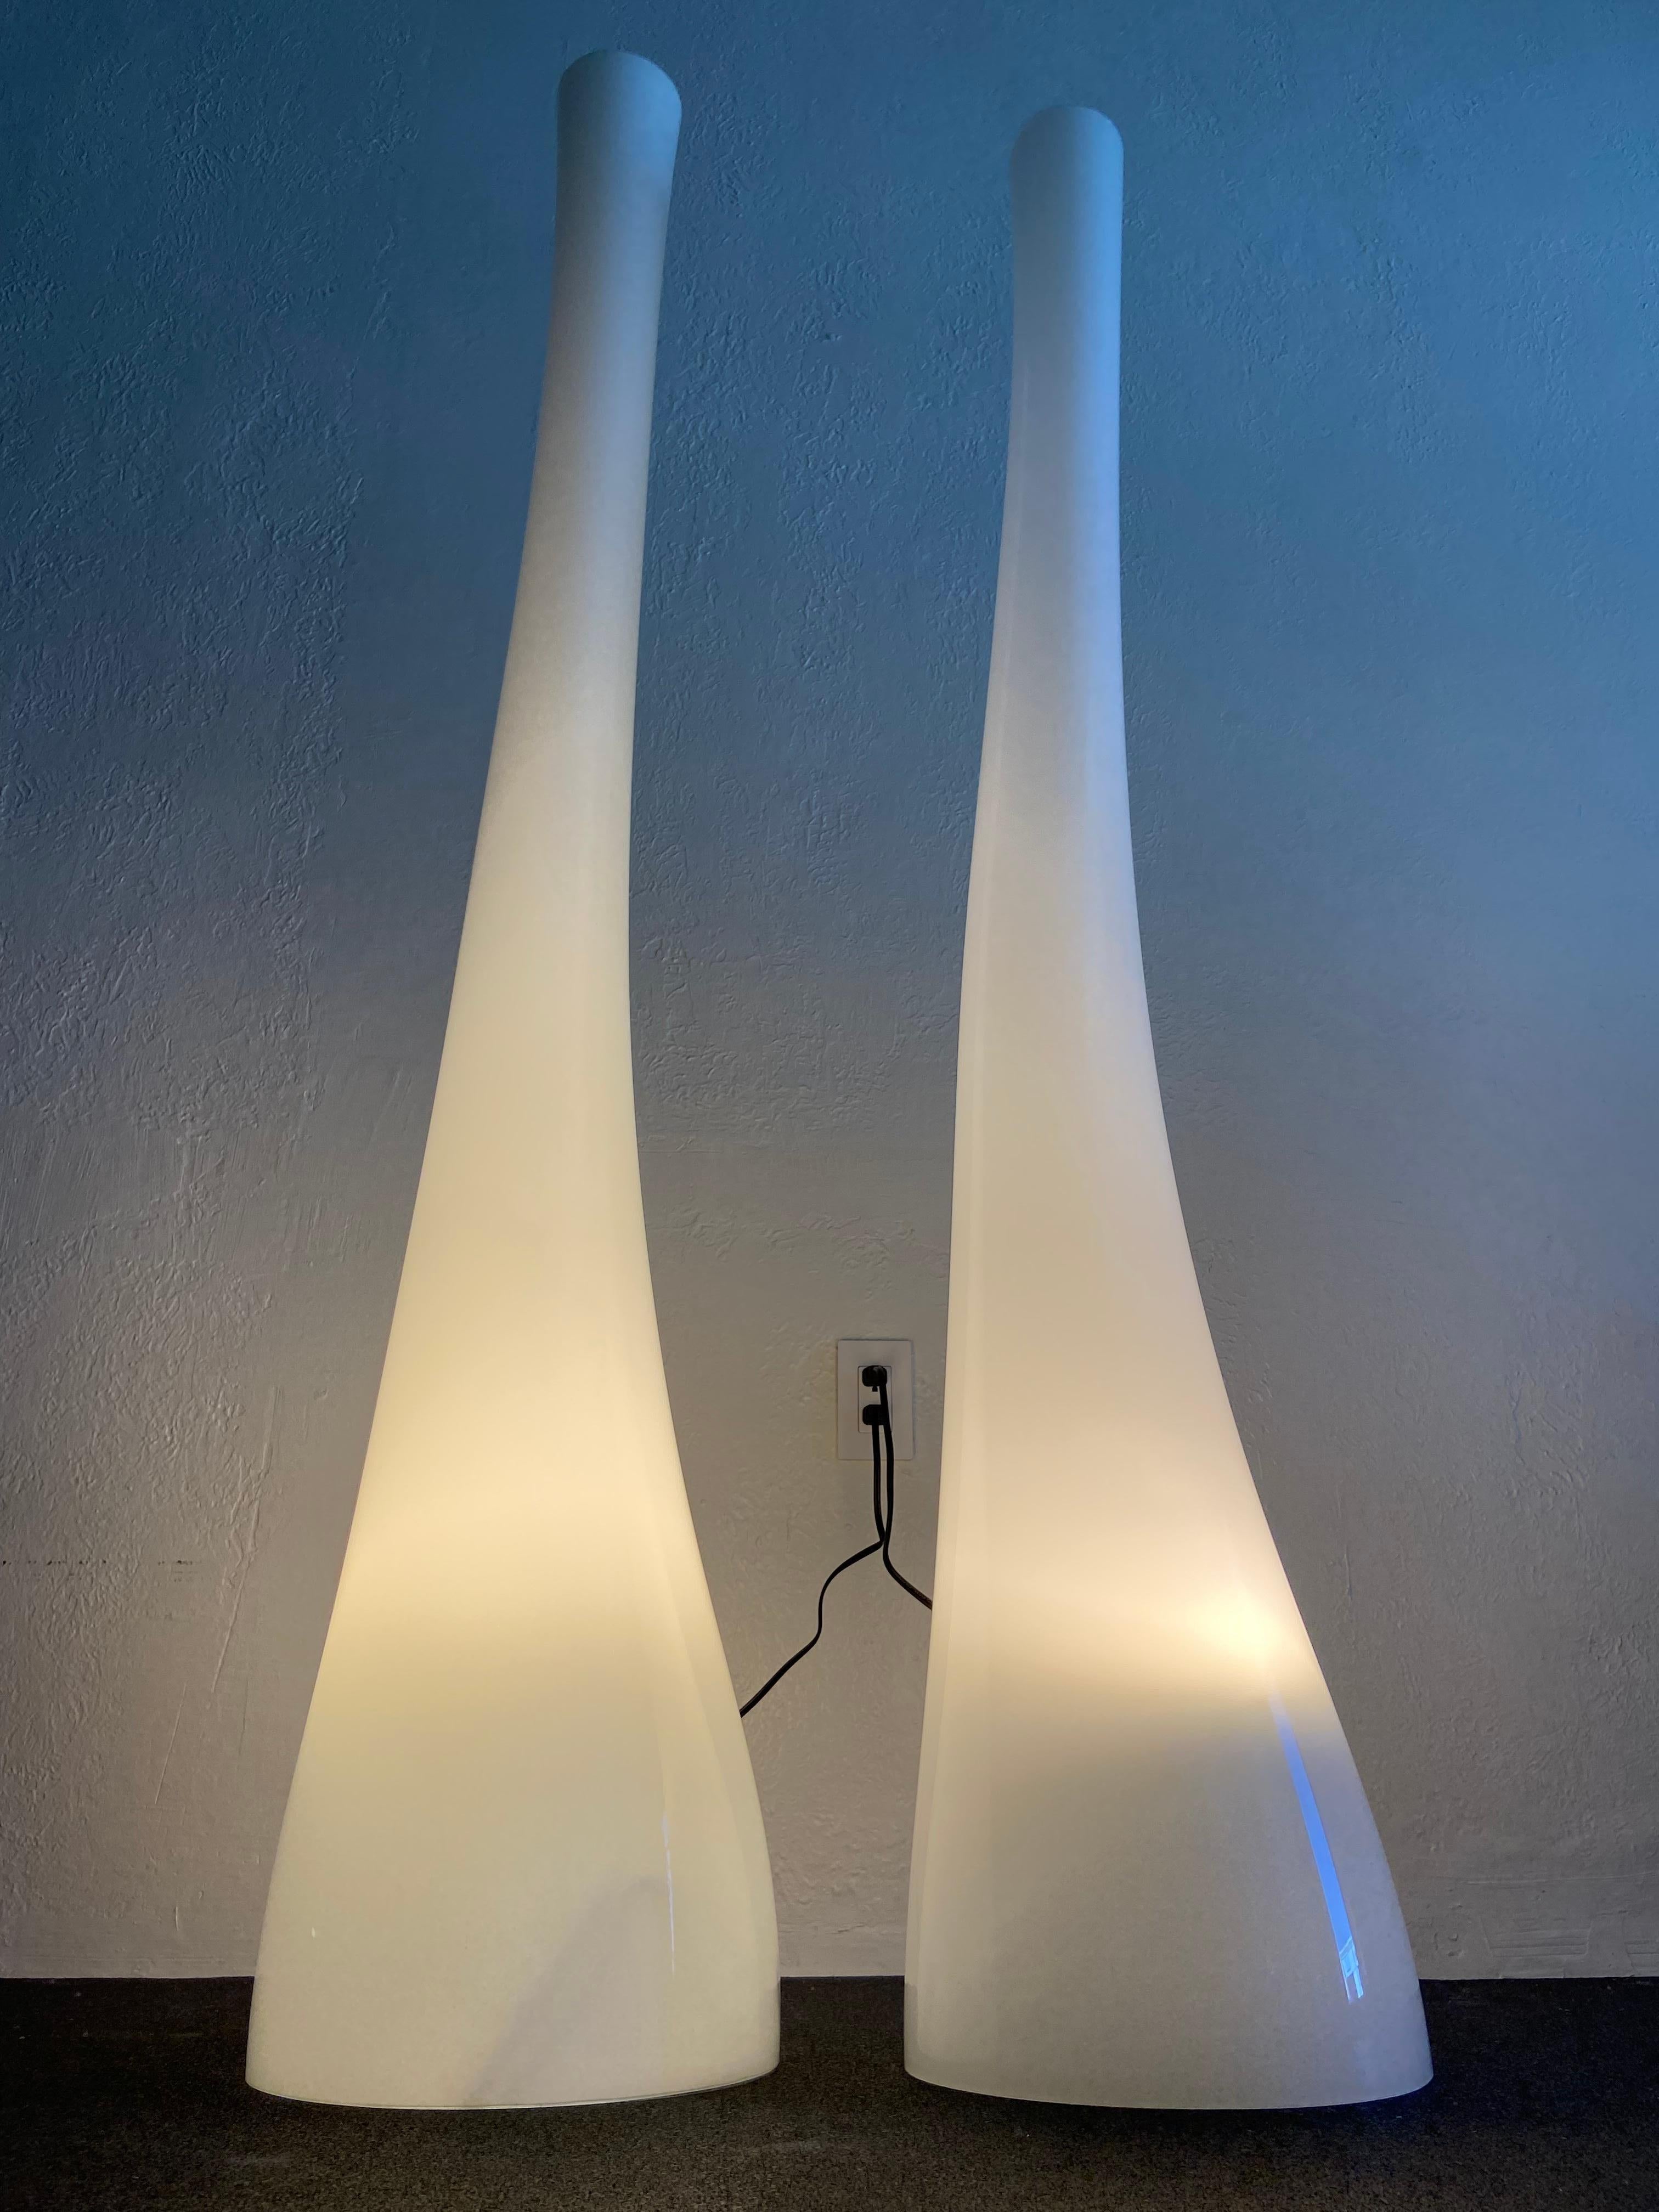 Paire de lampadaires en verre organique de forme libre dans le style de Holmegaard. Les deux lampes sont en état de marche avec le câblage d'origine tel que trouvé. Veuillez noter qu'une des lampes est légèrement plus petite. 

Plus grande lampe :